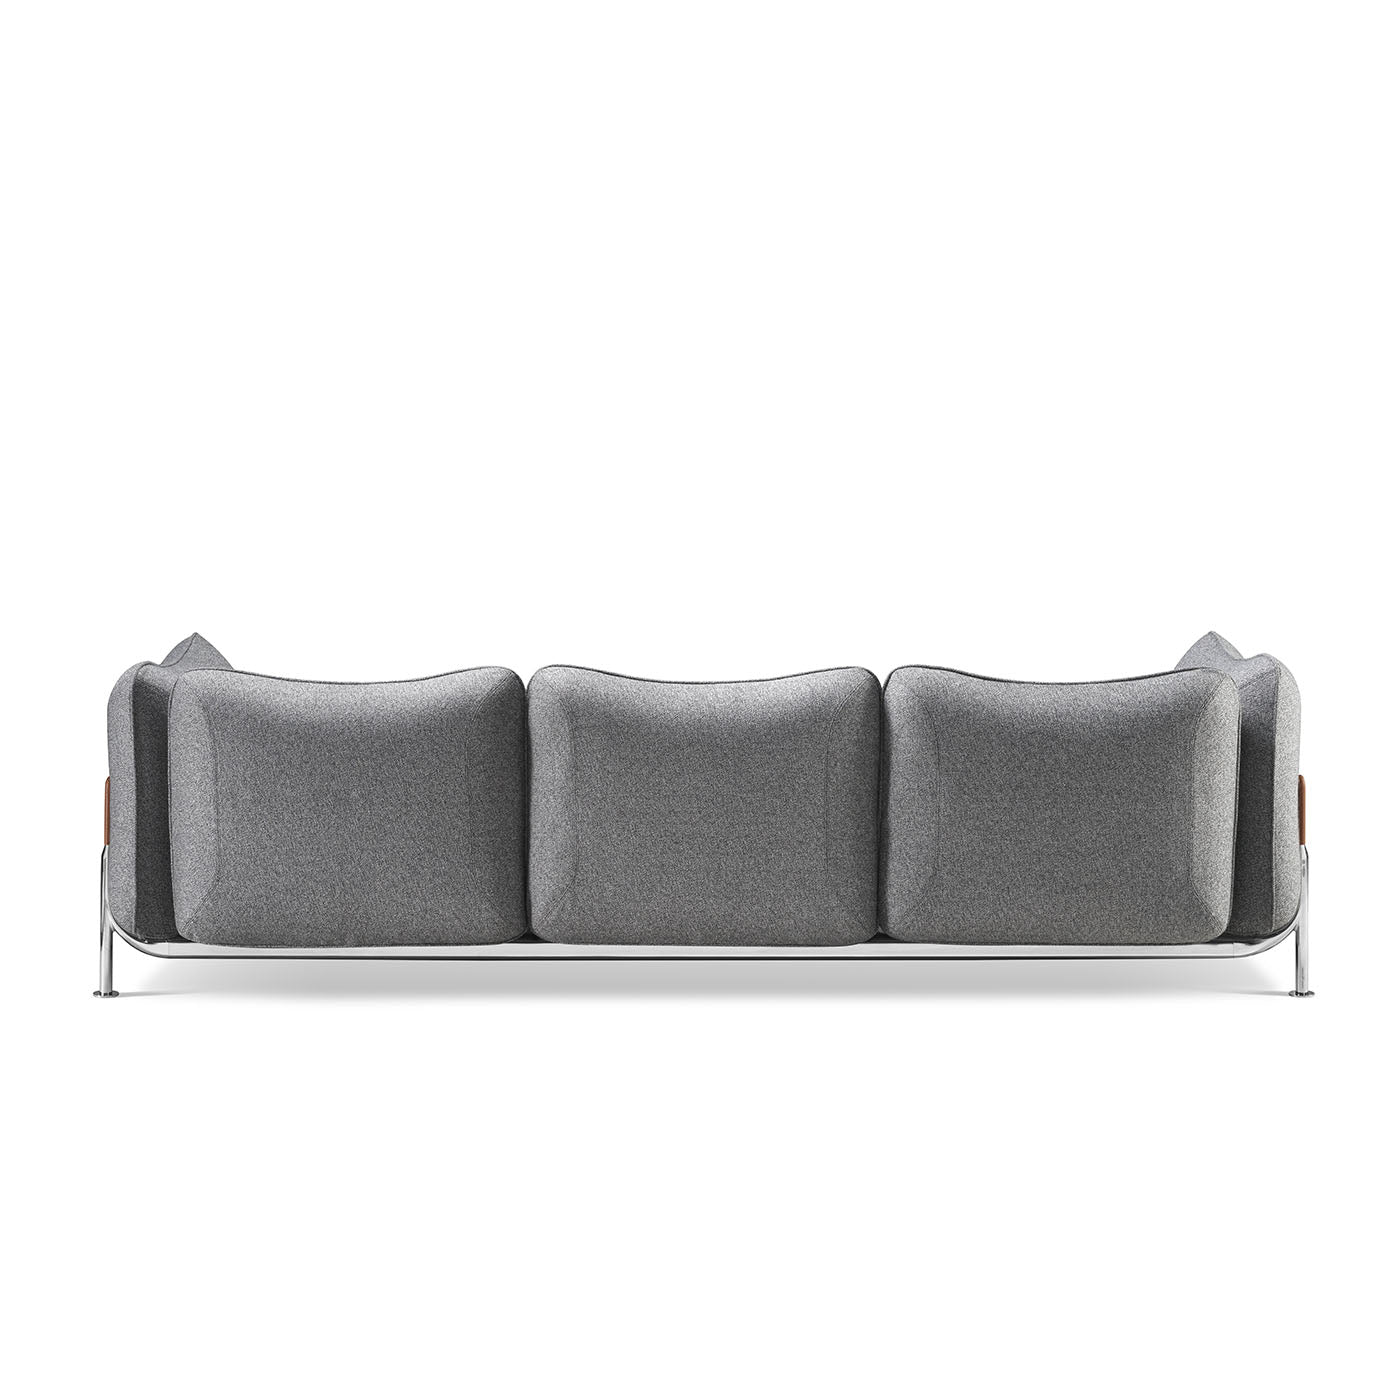 Tasca Sofá de 3 plazas de tela gris - Vista alternativa 2